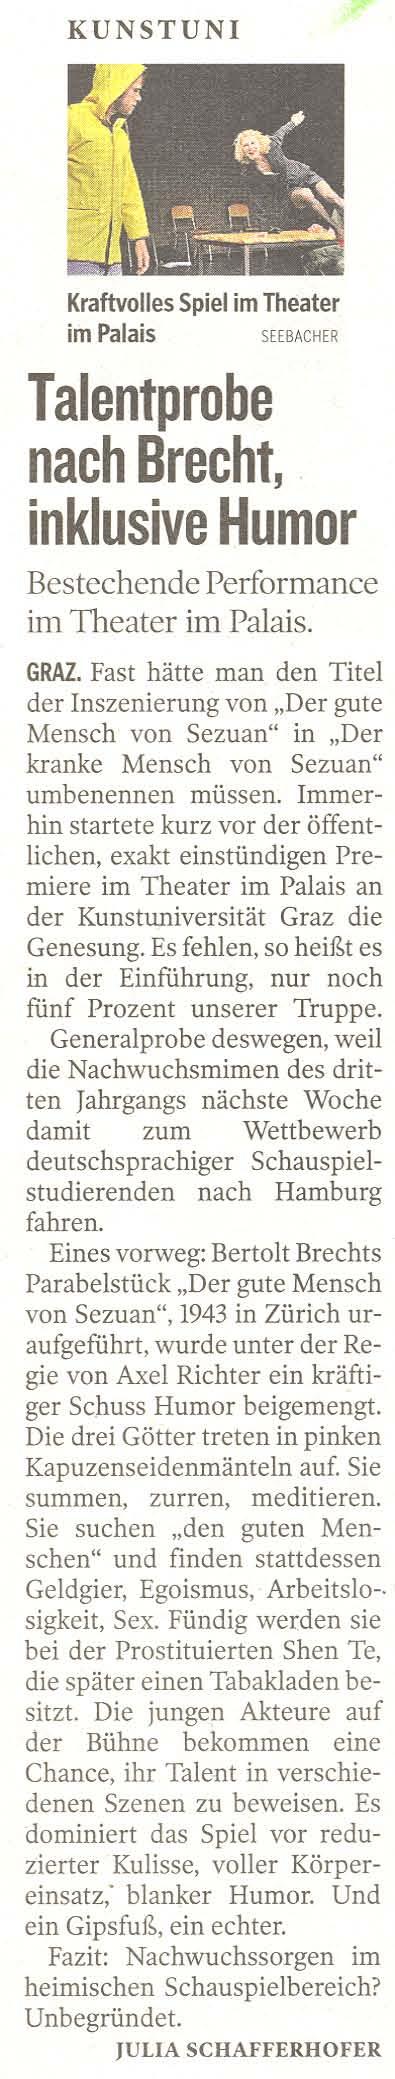 Kleine Zeitung, Kultur, 18.